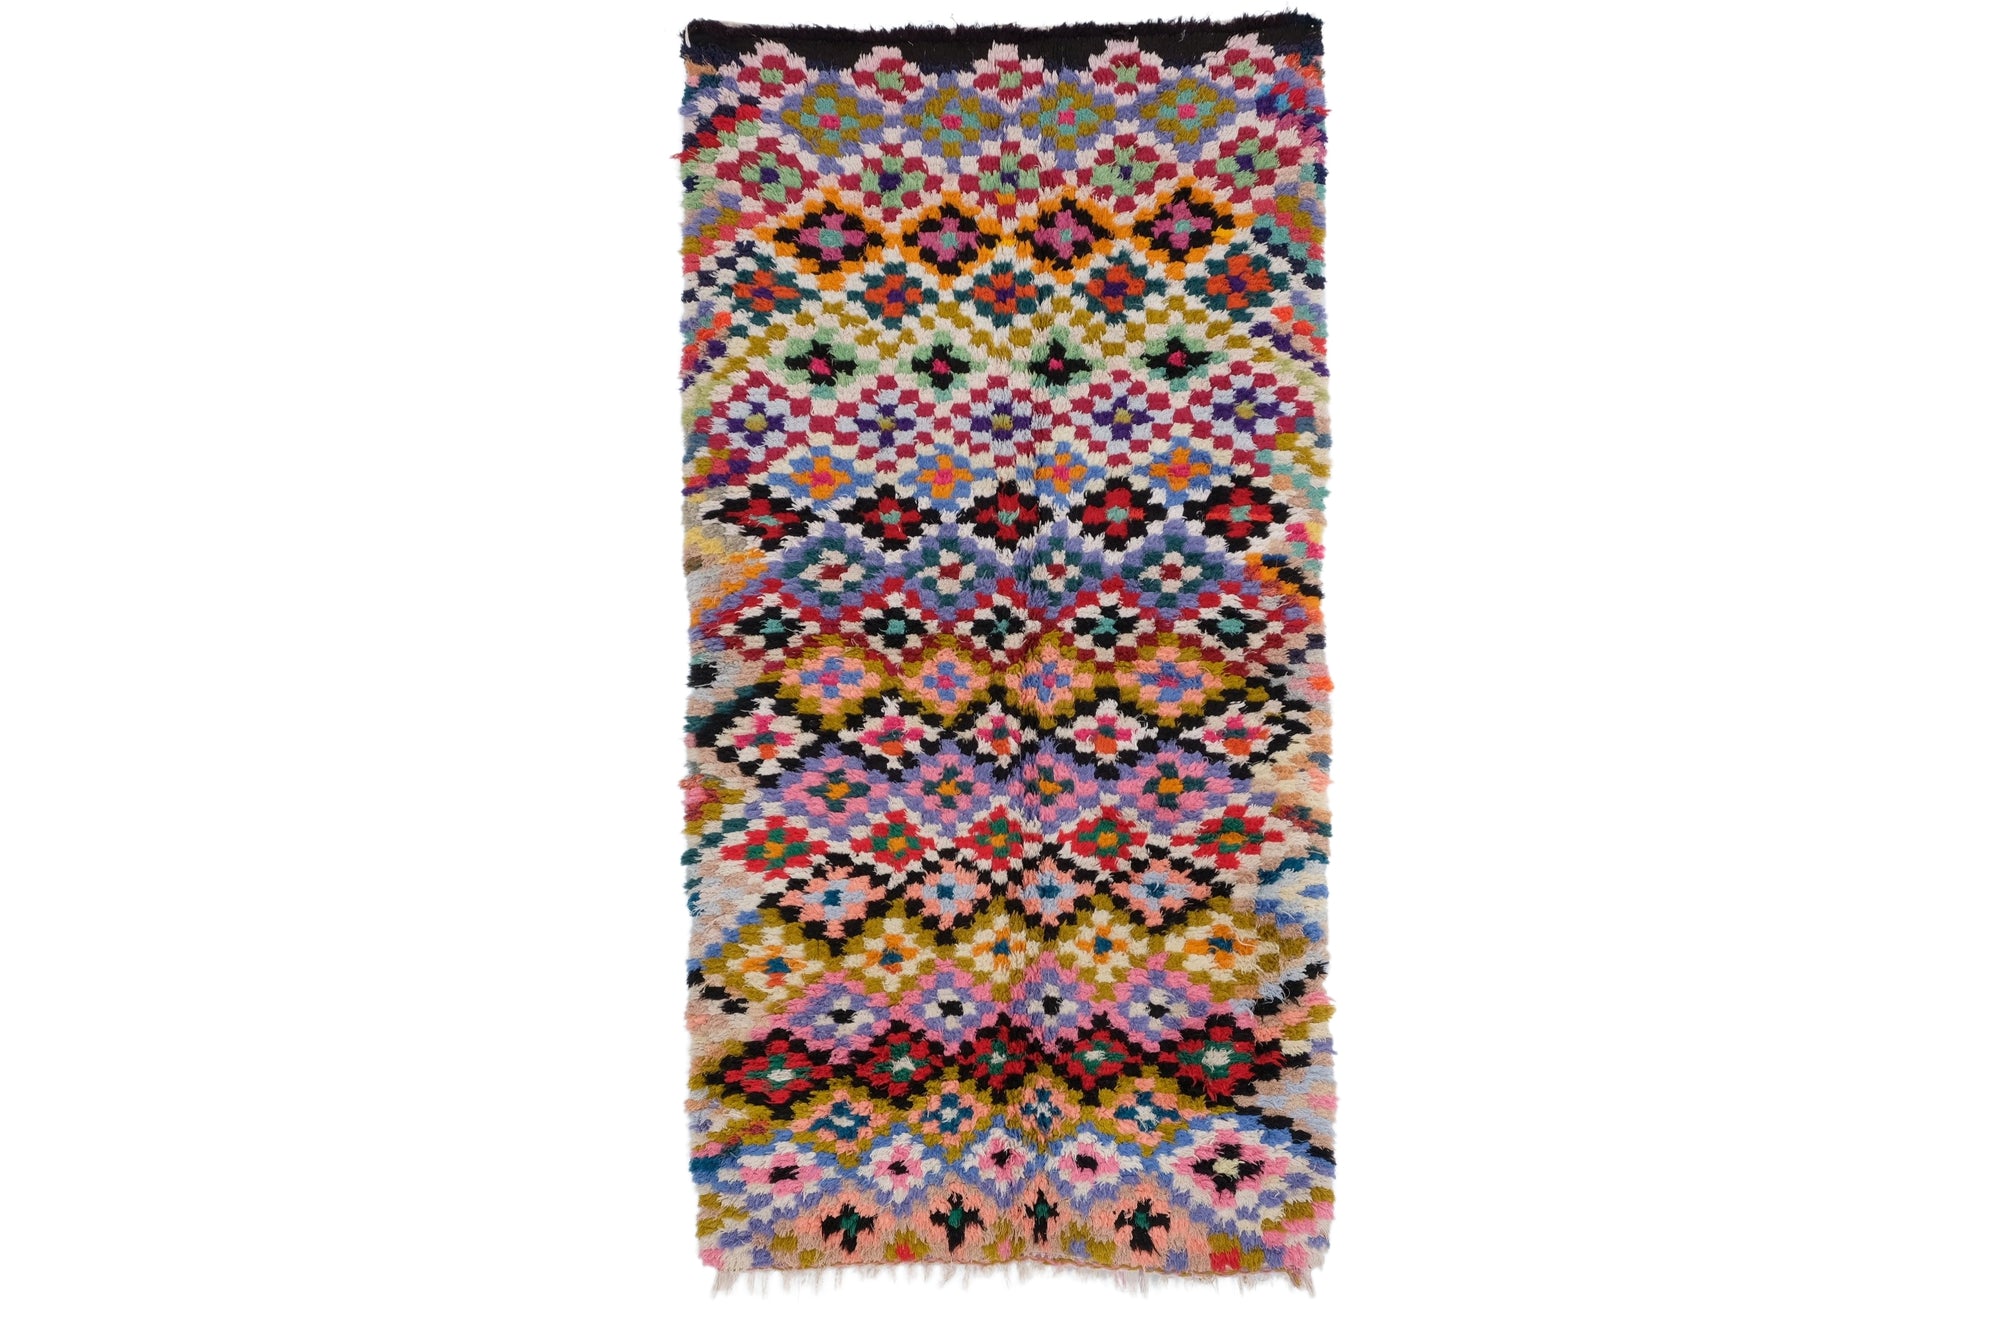 Boucherouite rug 8.03 ft x 4.26 ft | 245 x 130 cm